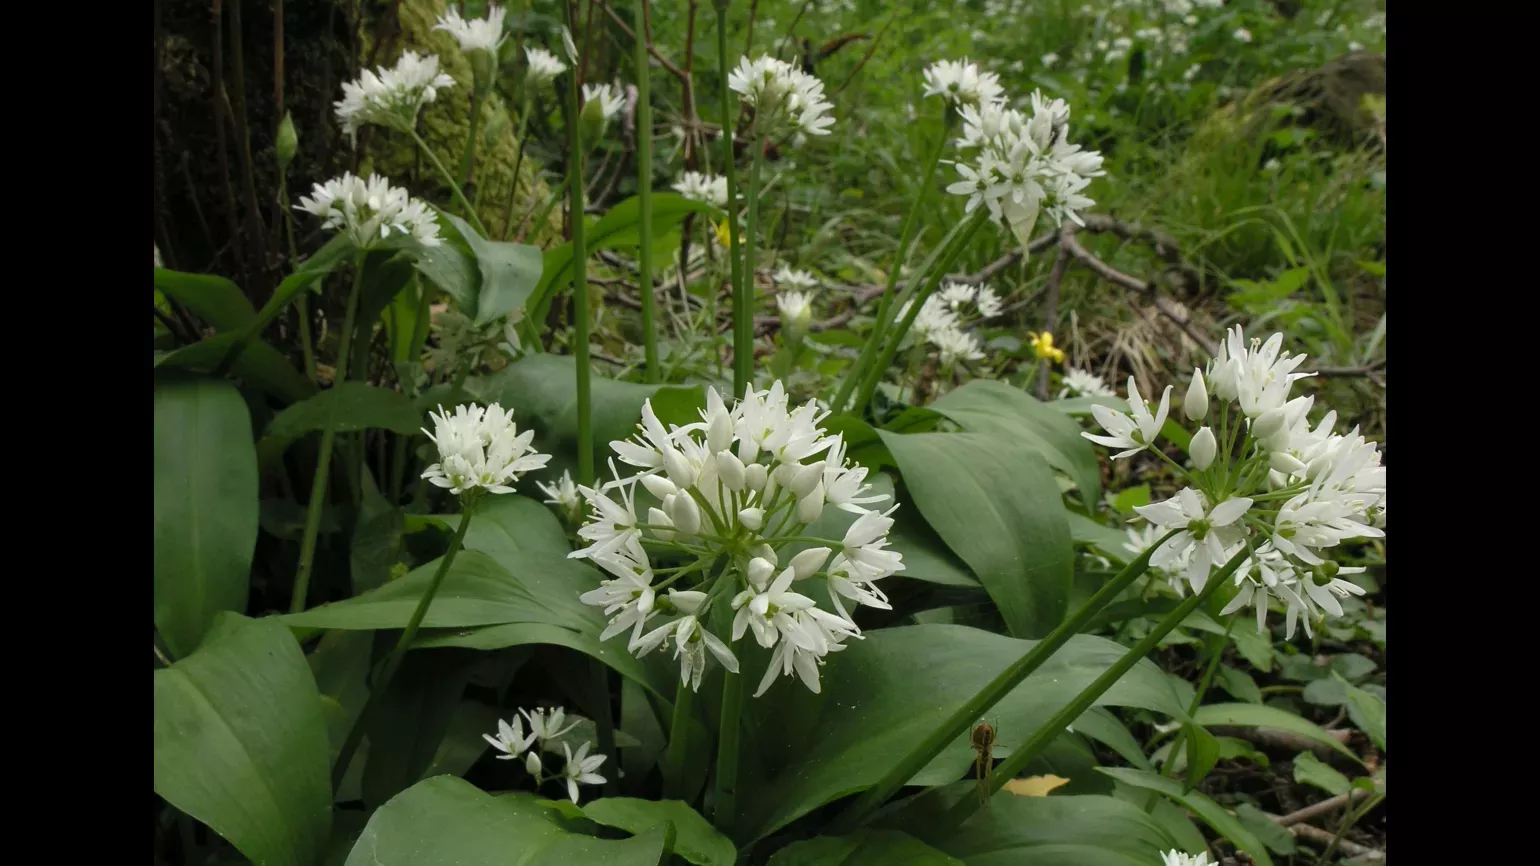 Flowering garlic plants have clusters of individual flowers arranged in sphere patterns